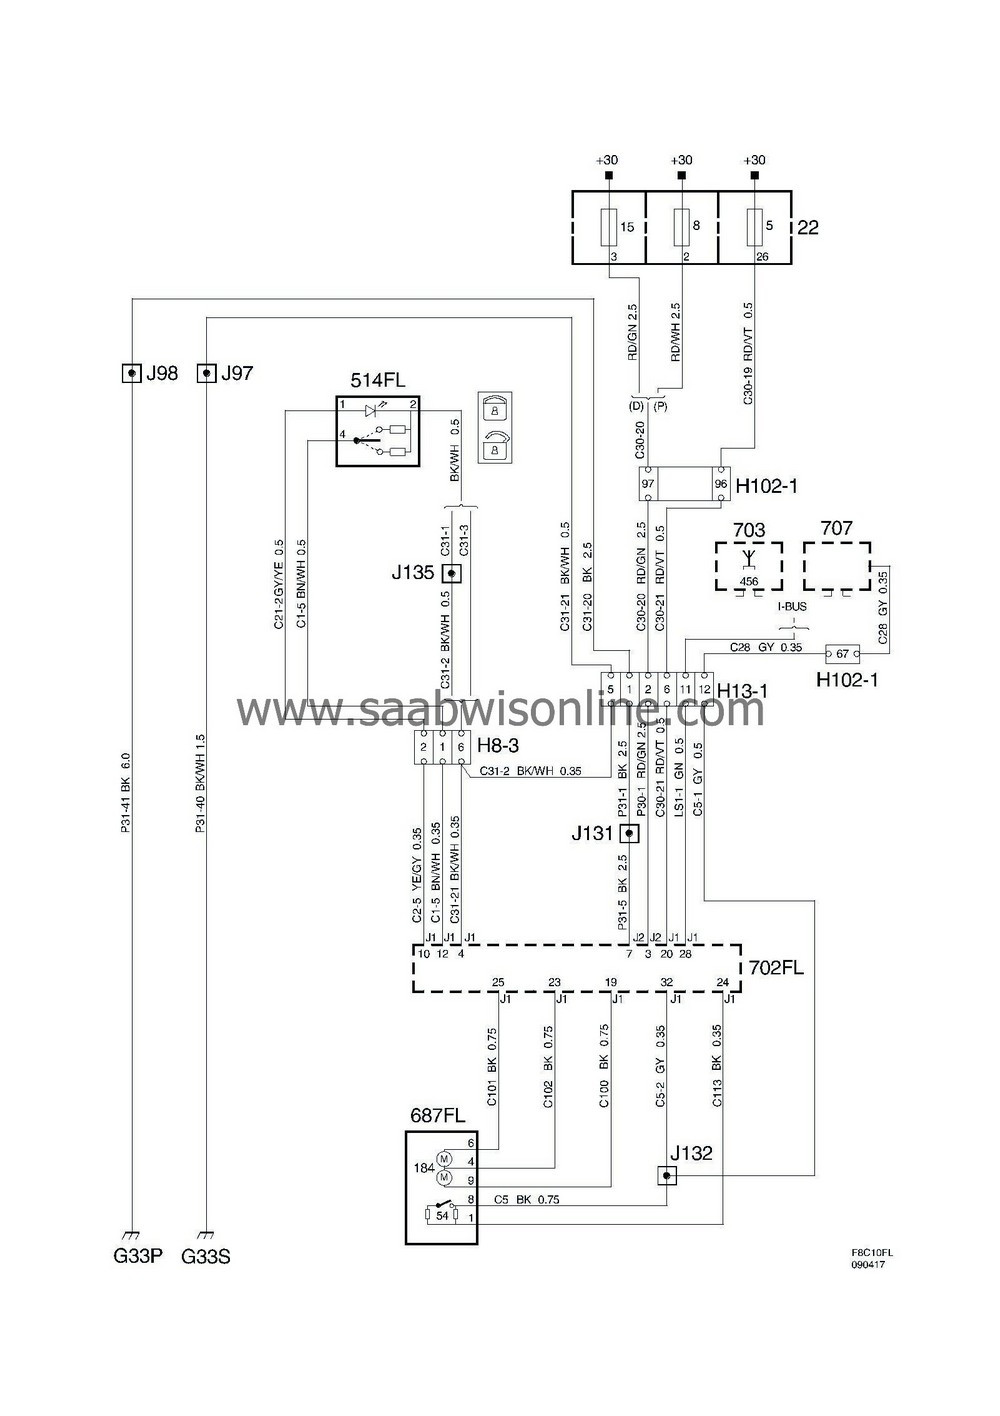 Saab 9 3 Wiring Diagram Central Locking System Fl â 9-3 2009 Saab Workshop Information … Of Saab 9 3 Wiring Diagram